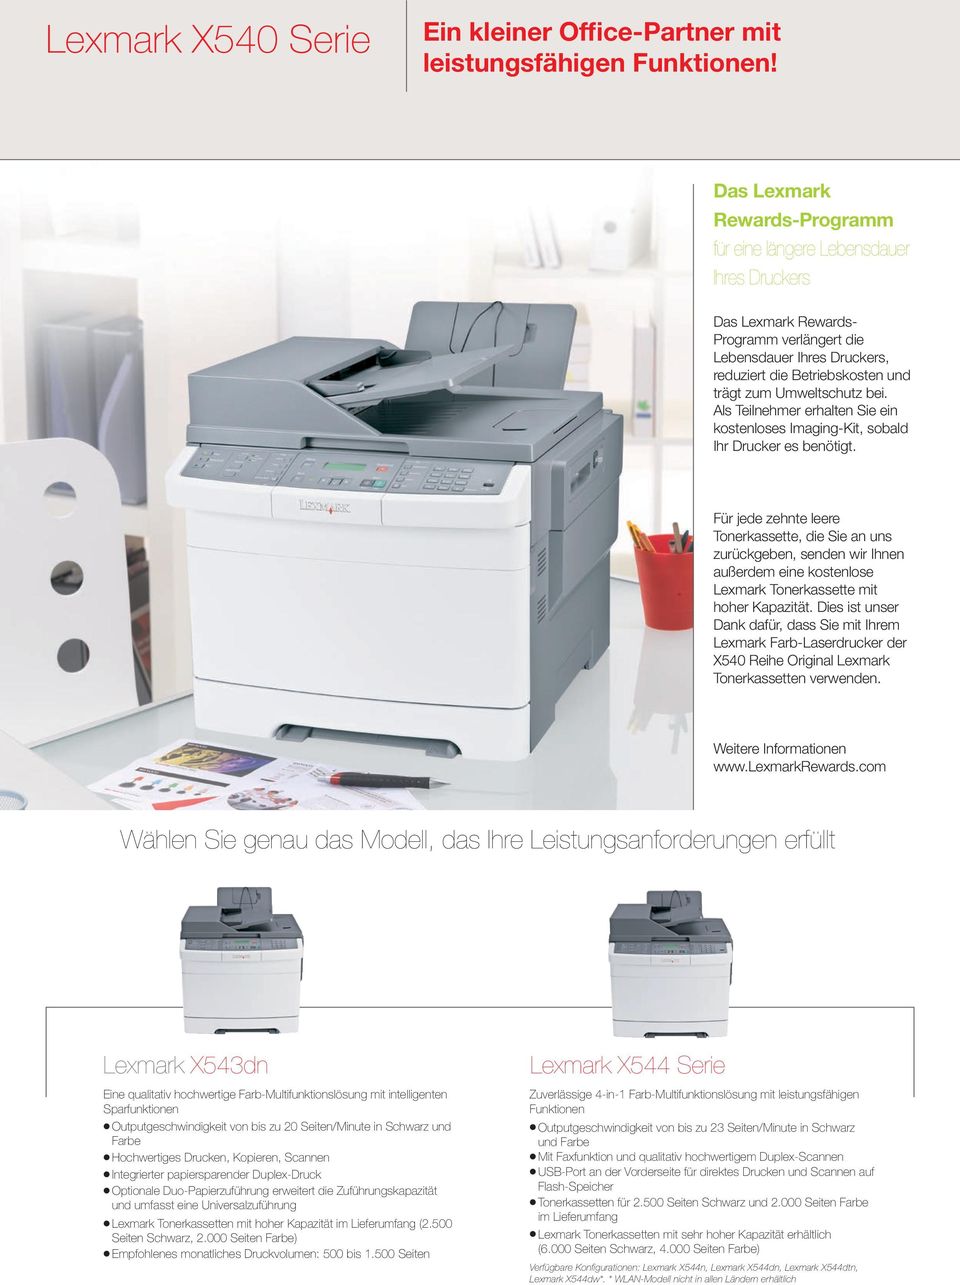 Umweltschutz bei. Als Teilnehmer erhalten Sie ein kostenloses Imaging-Kit, sobald Ihr Drucker es benötigt.